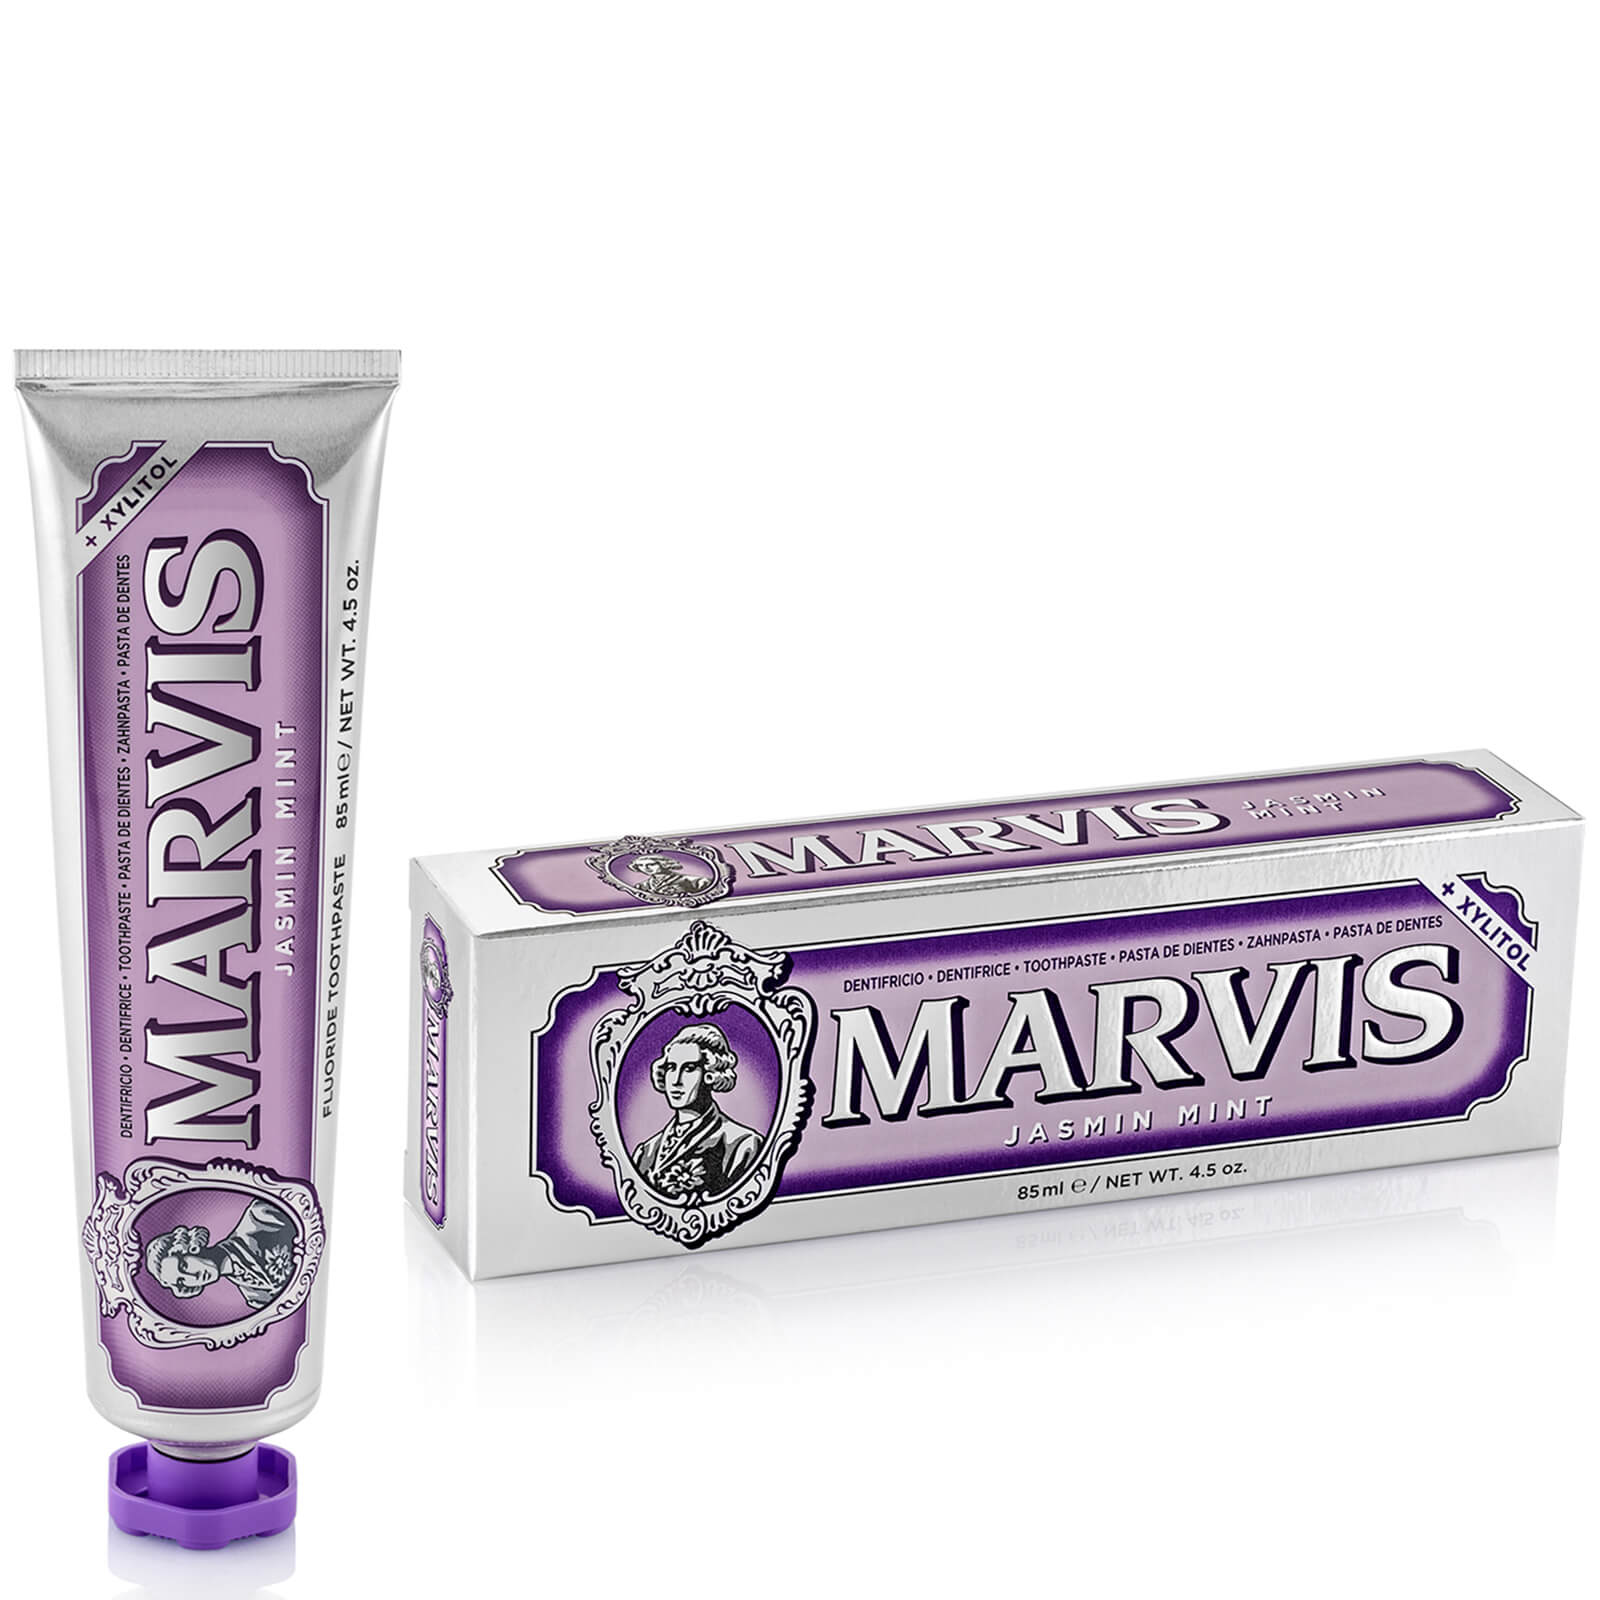 Marvis Jasmine Mint Toothpaste (85ml) lookfantastic.com imagine